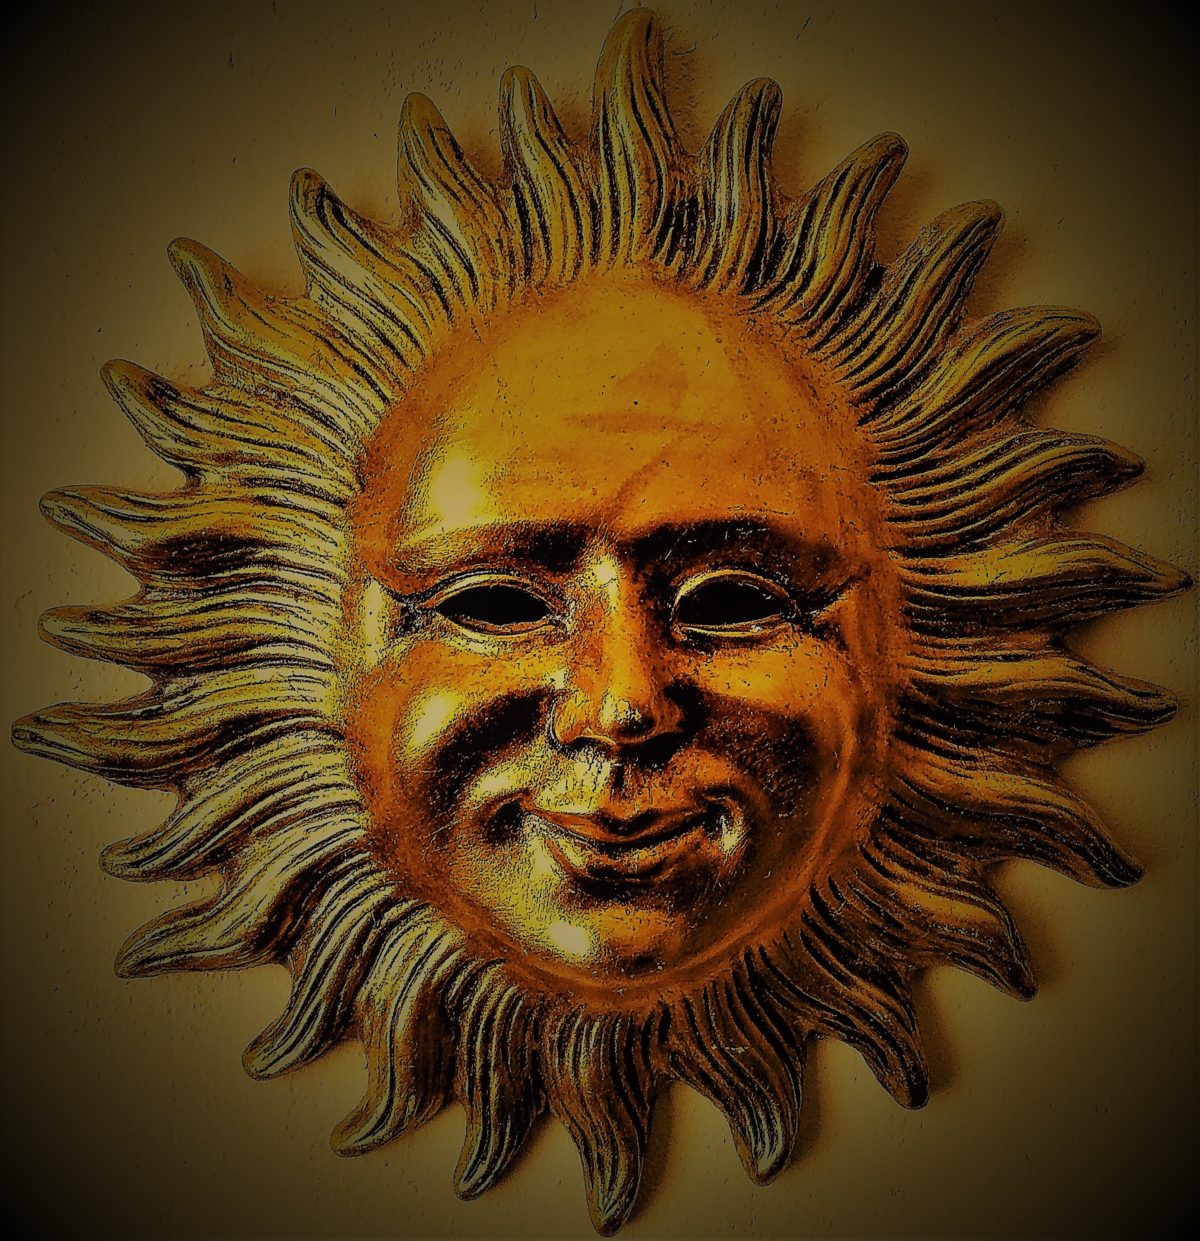 Soleil vénitien doré figurant un visage humain souriant et bienveillant.